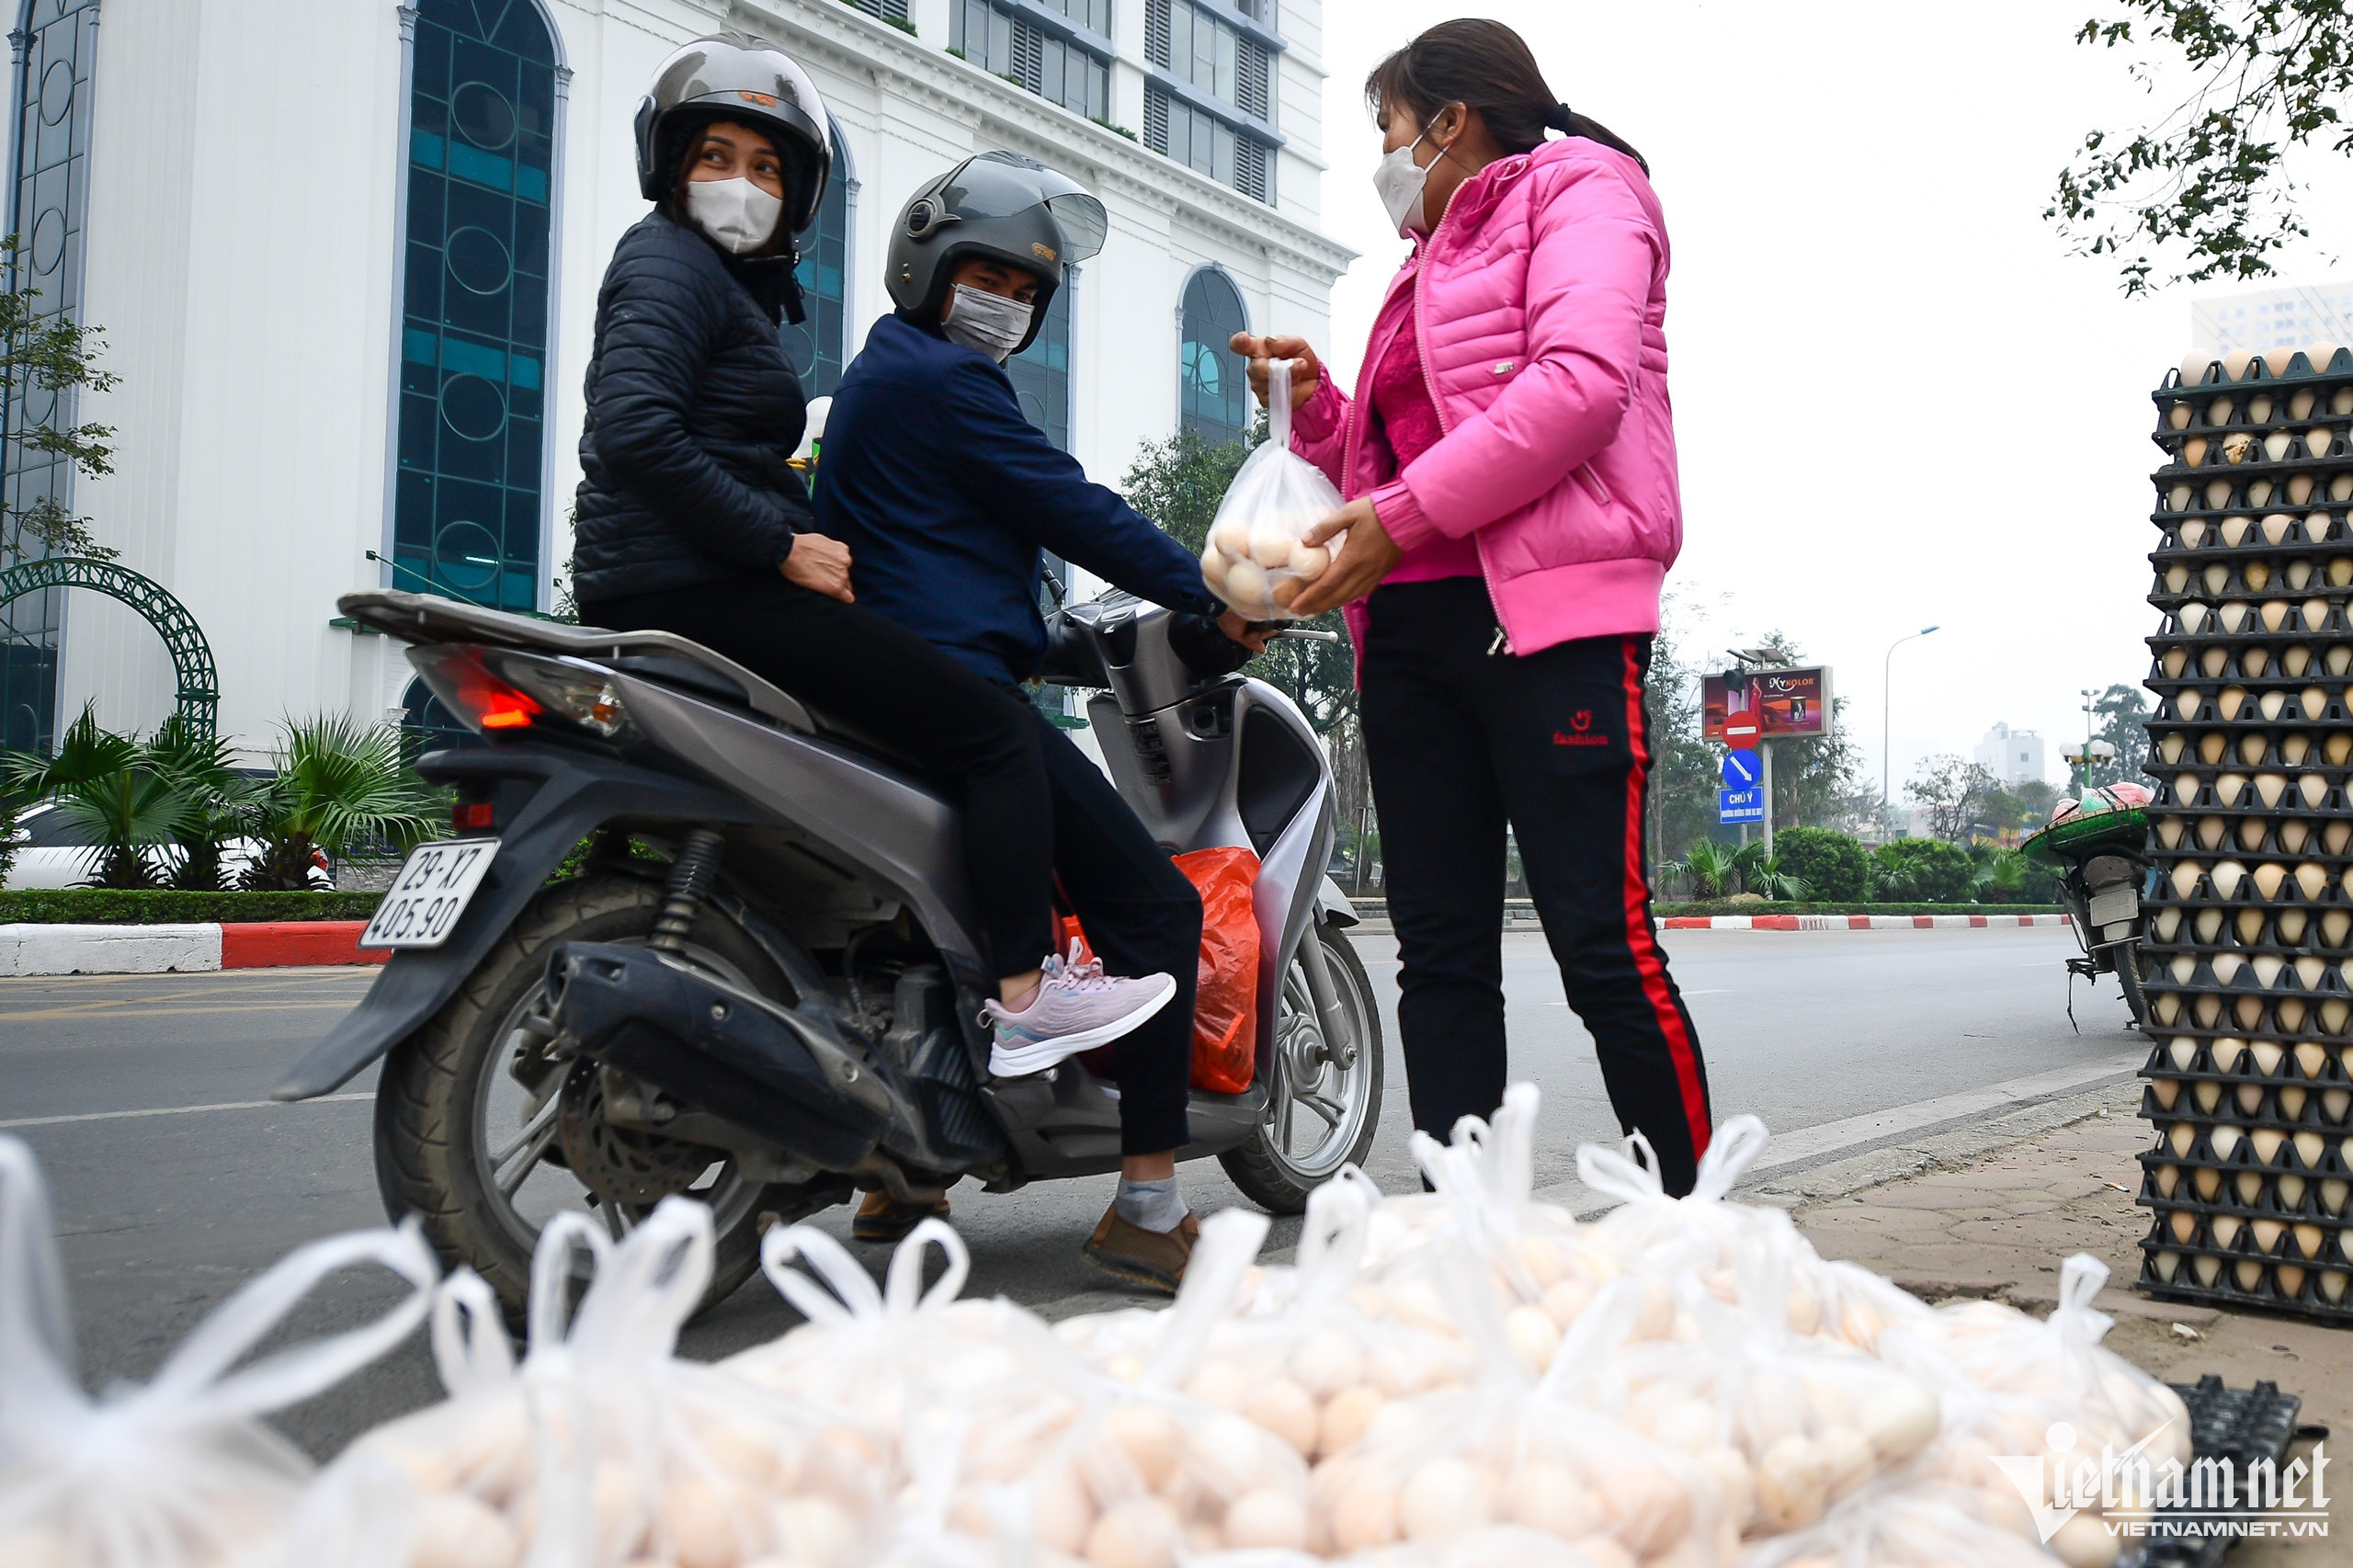 Trứng gà giá 65.000 đồng/30 quả bày bán tràn lan vỉa hè, lòng đường Hà Nội